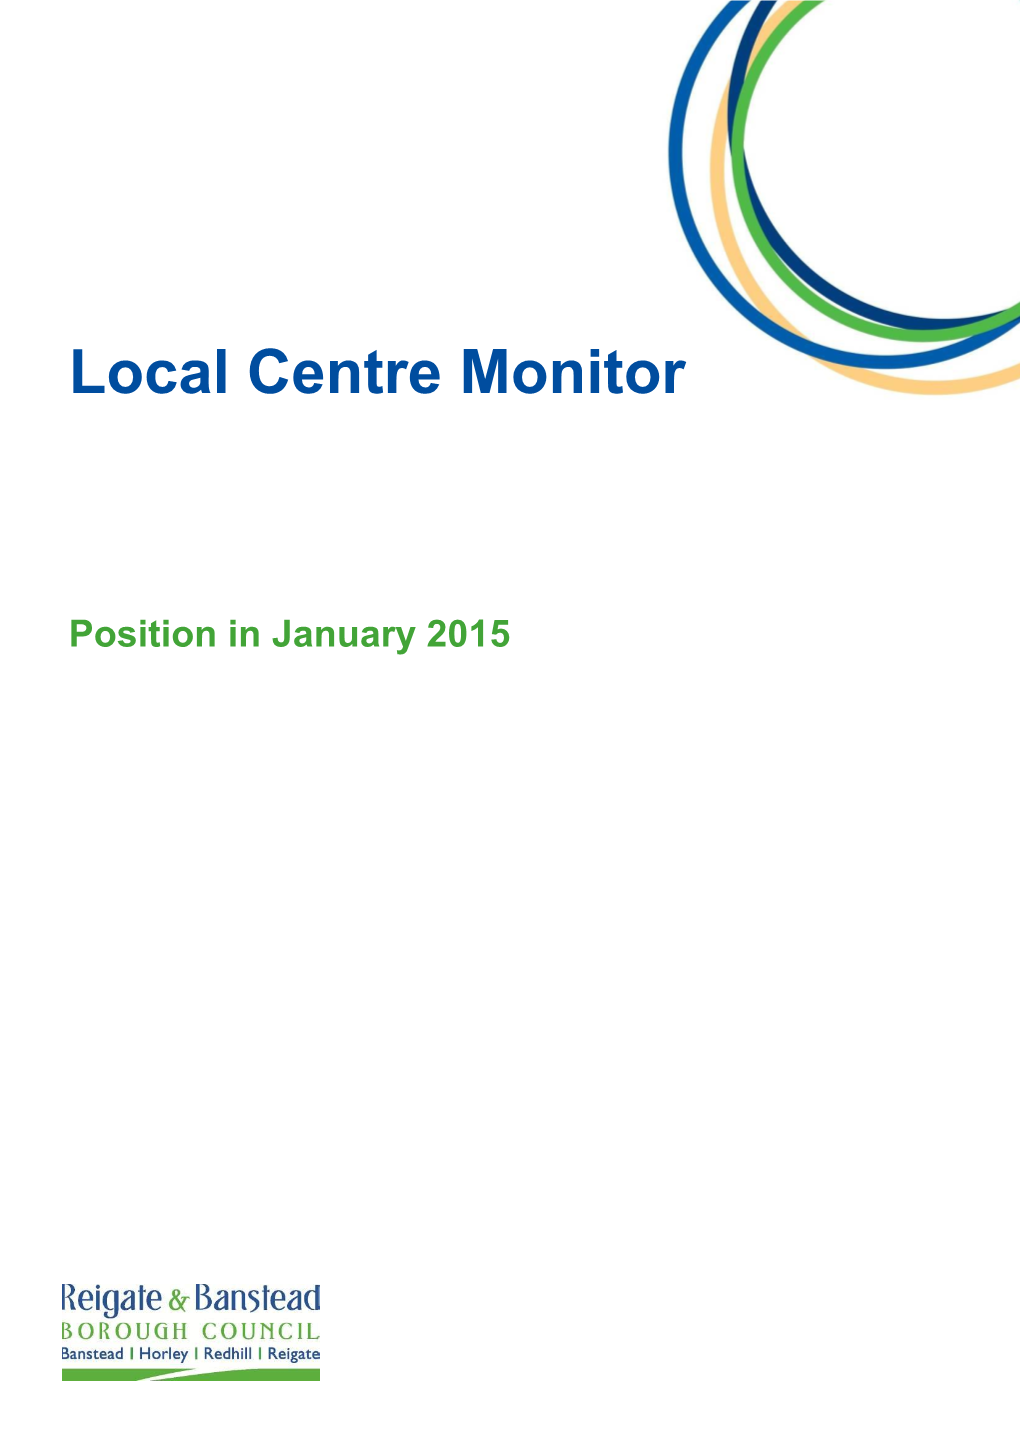 Local Centre Monitor 2014